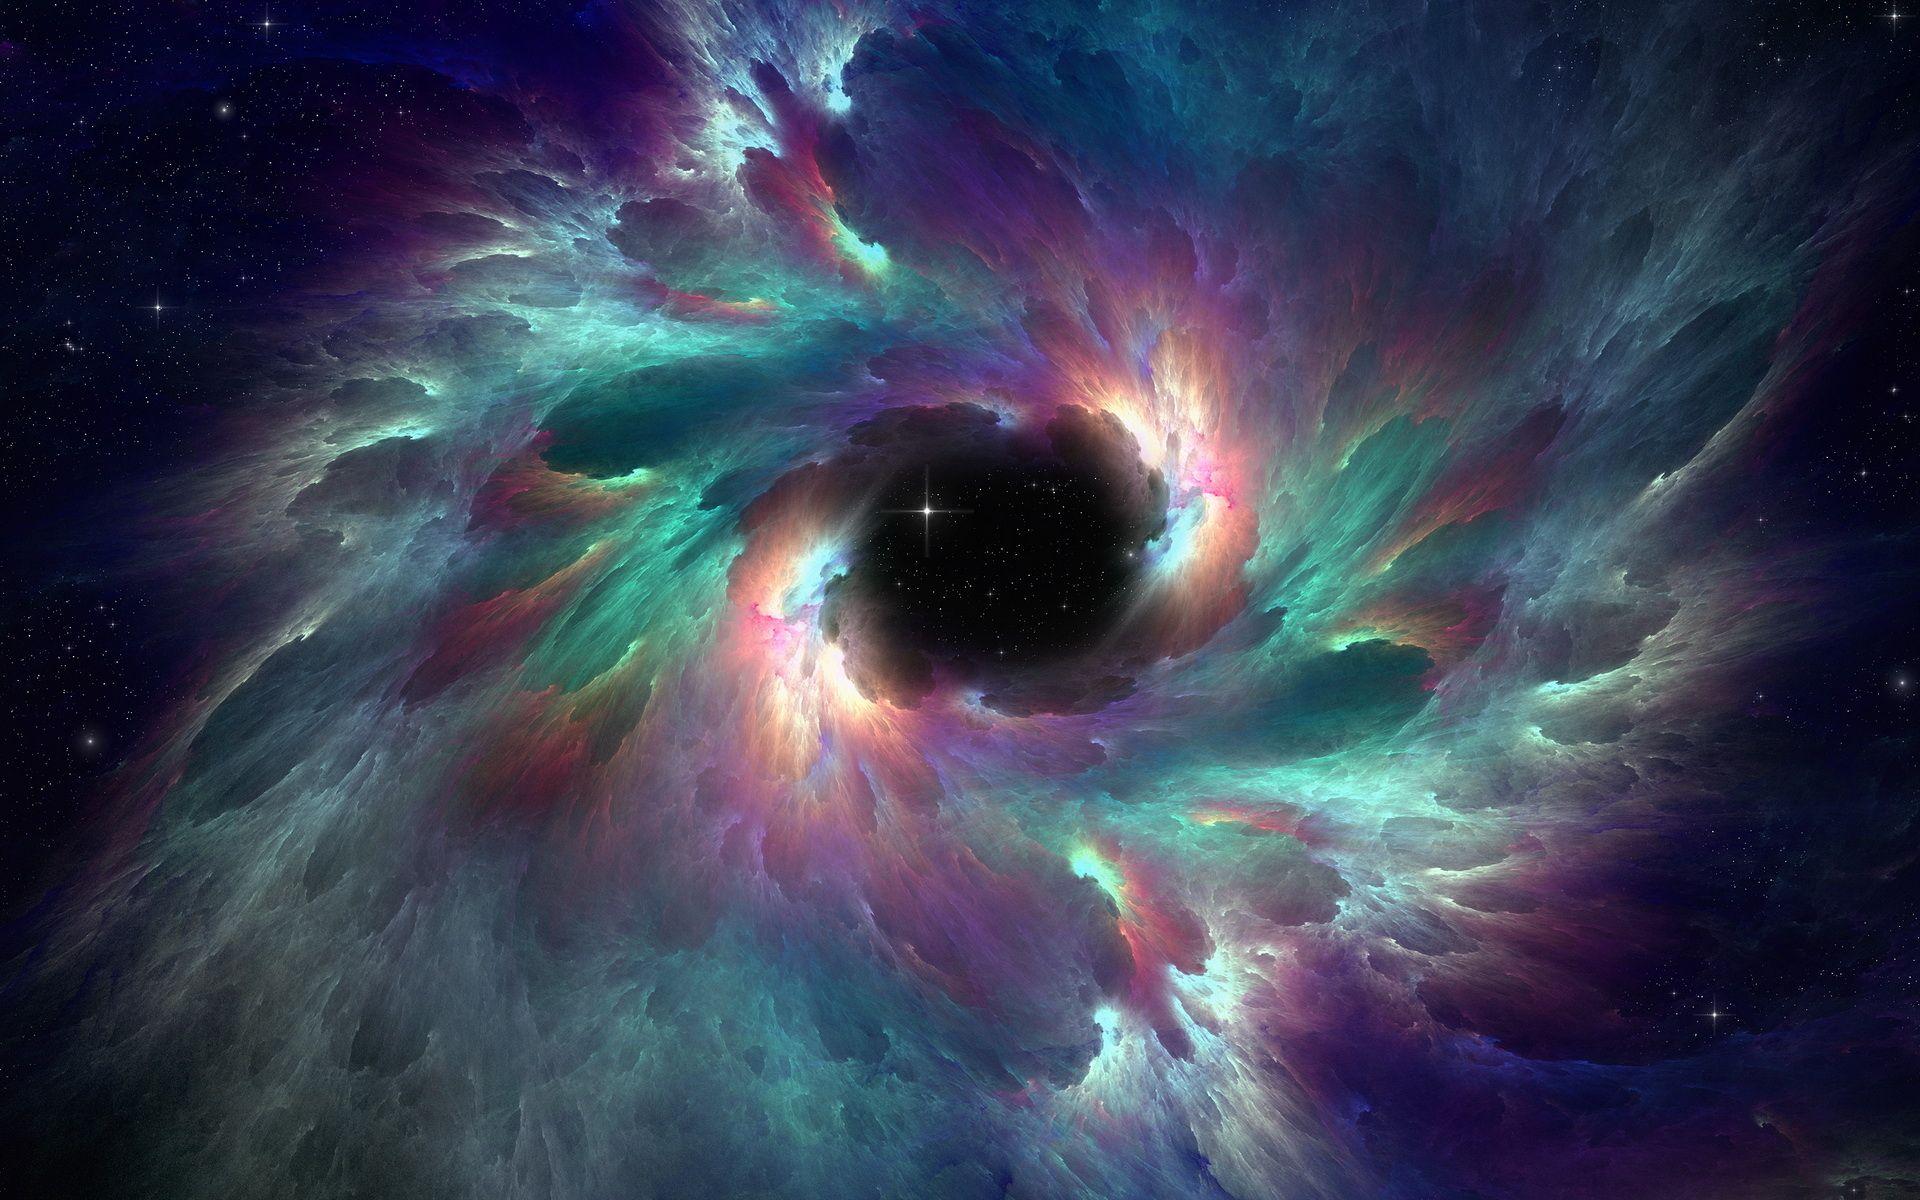 space nebula. Space Nebula wallpaper and image